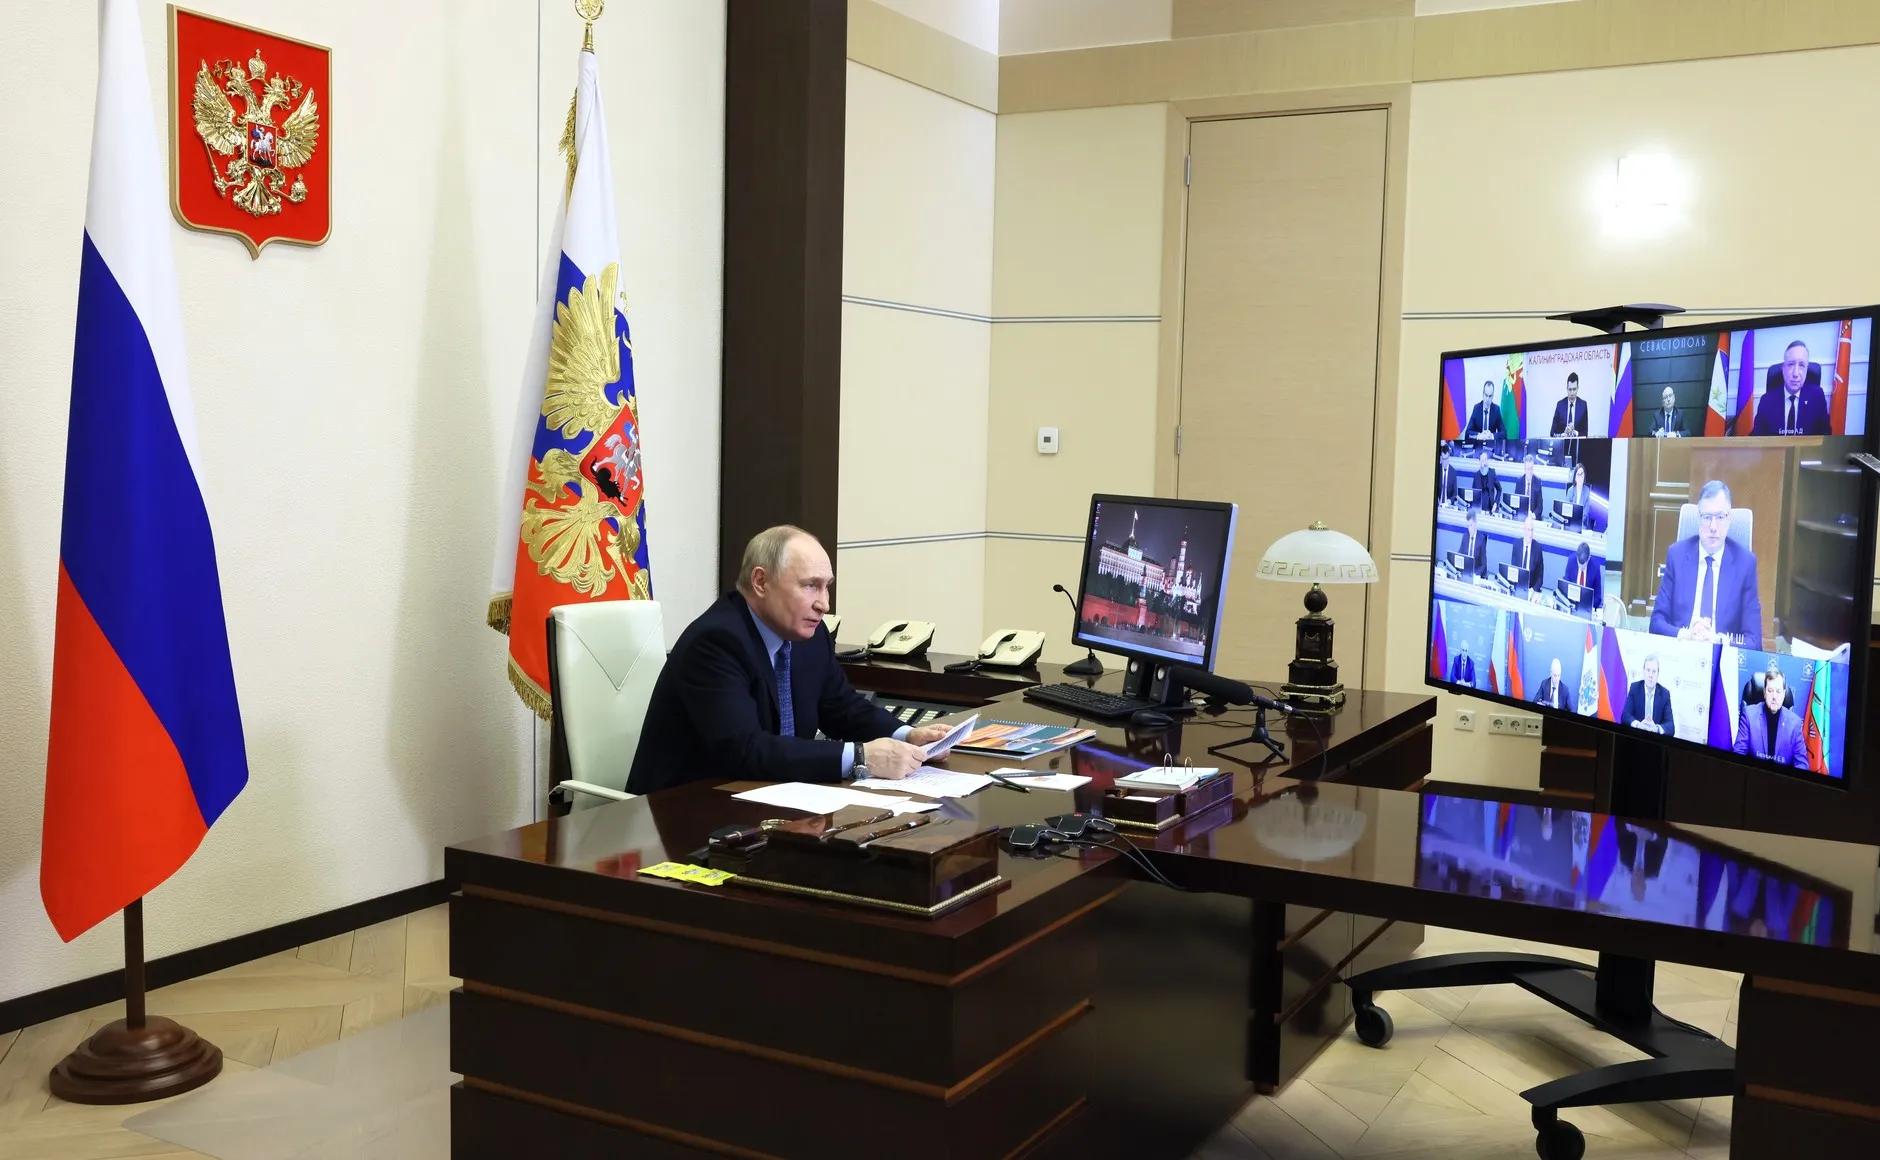 ФОМ: 84% граждан РФ положительно оценивают работу Путина и доверяют ему